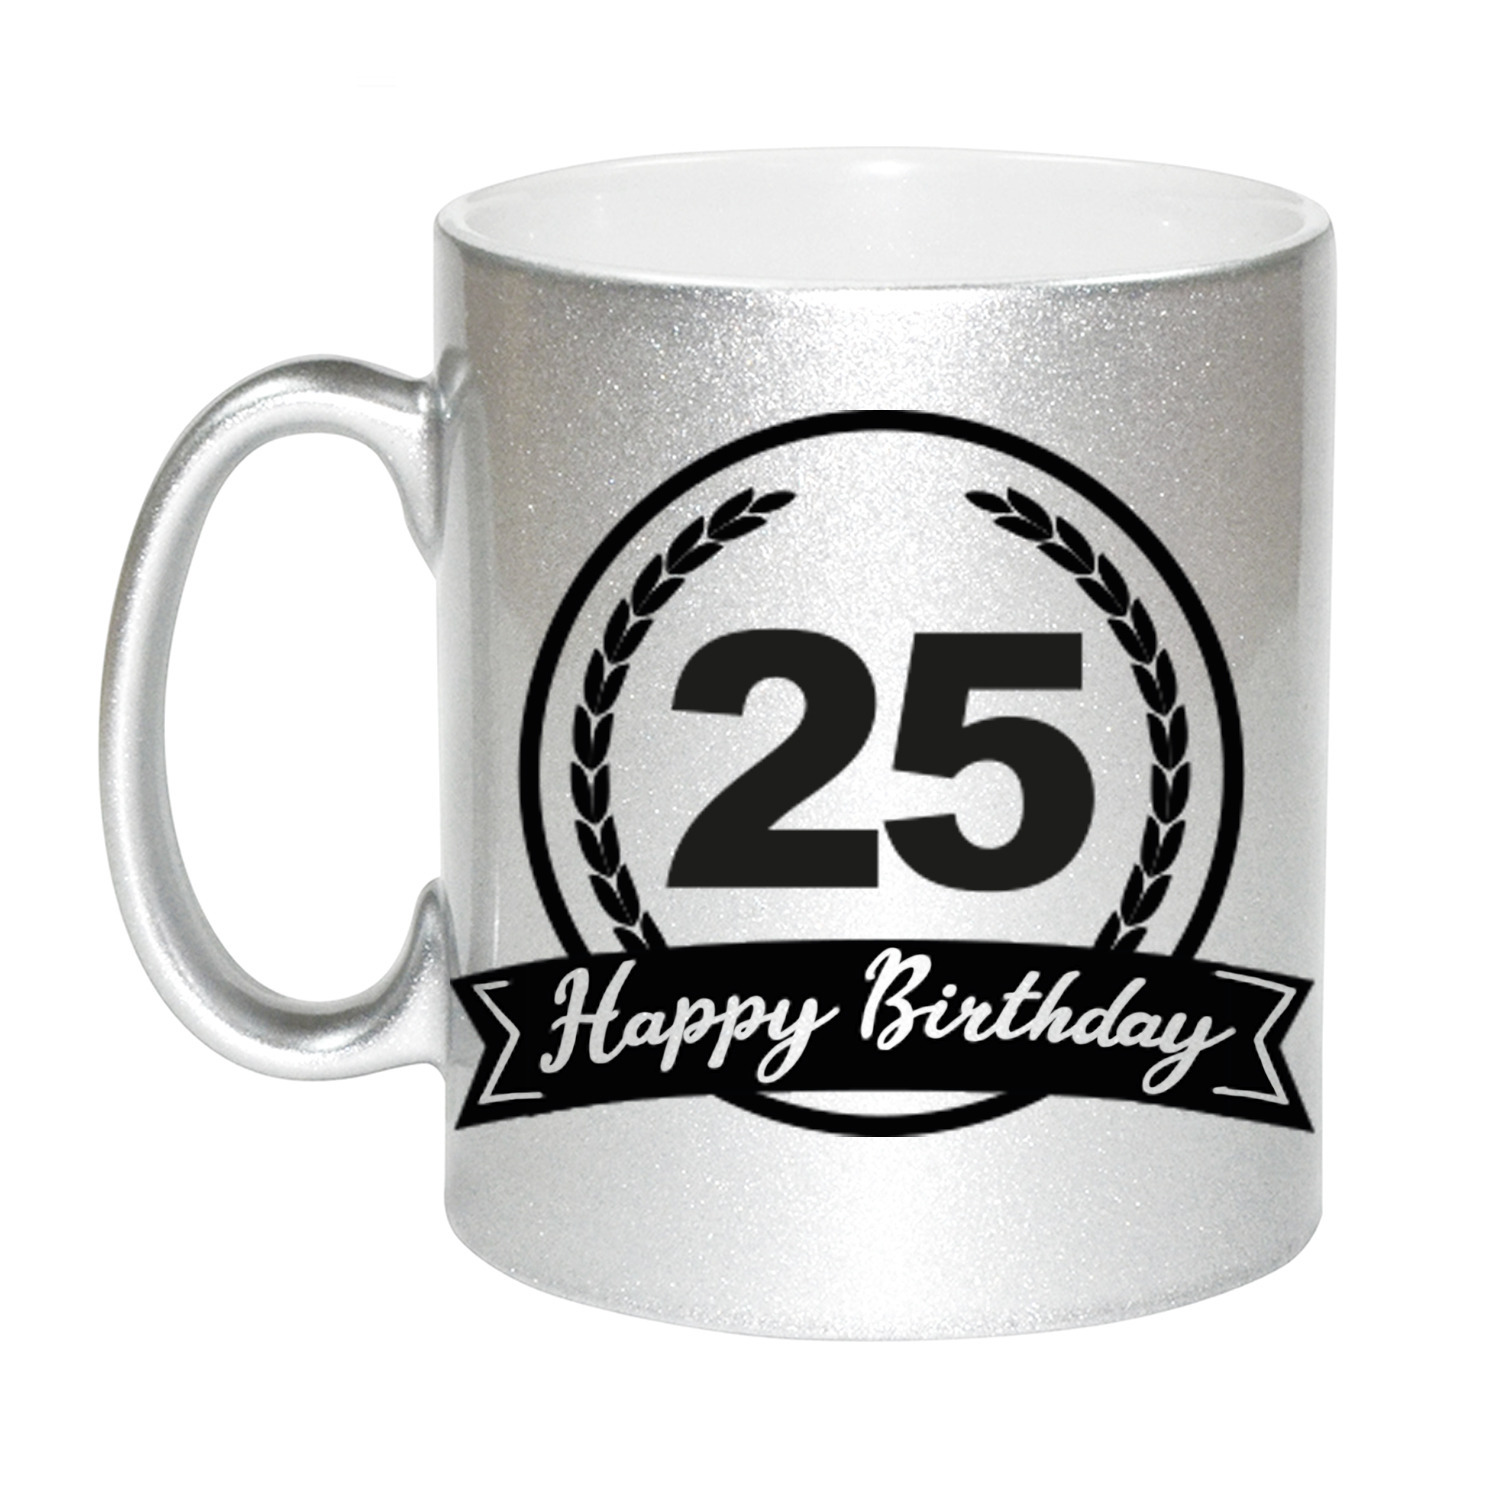 Happy Birthday 25 years zilveren cadeau mok / beker met wimpel 330 ml